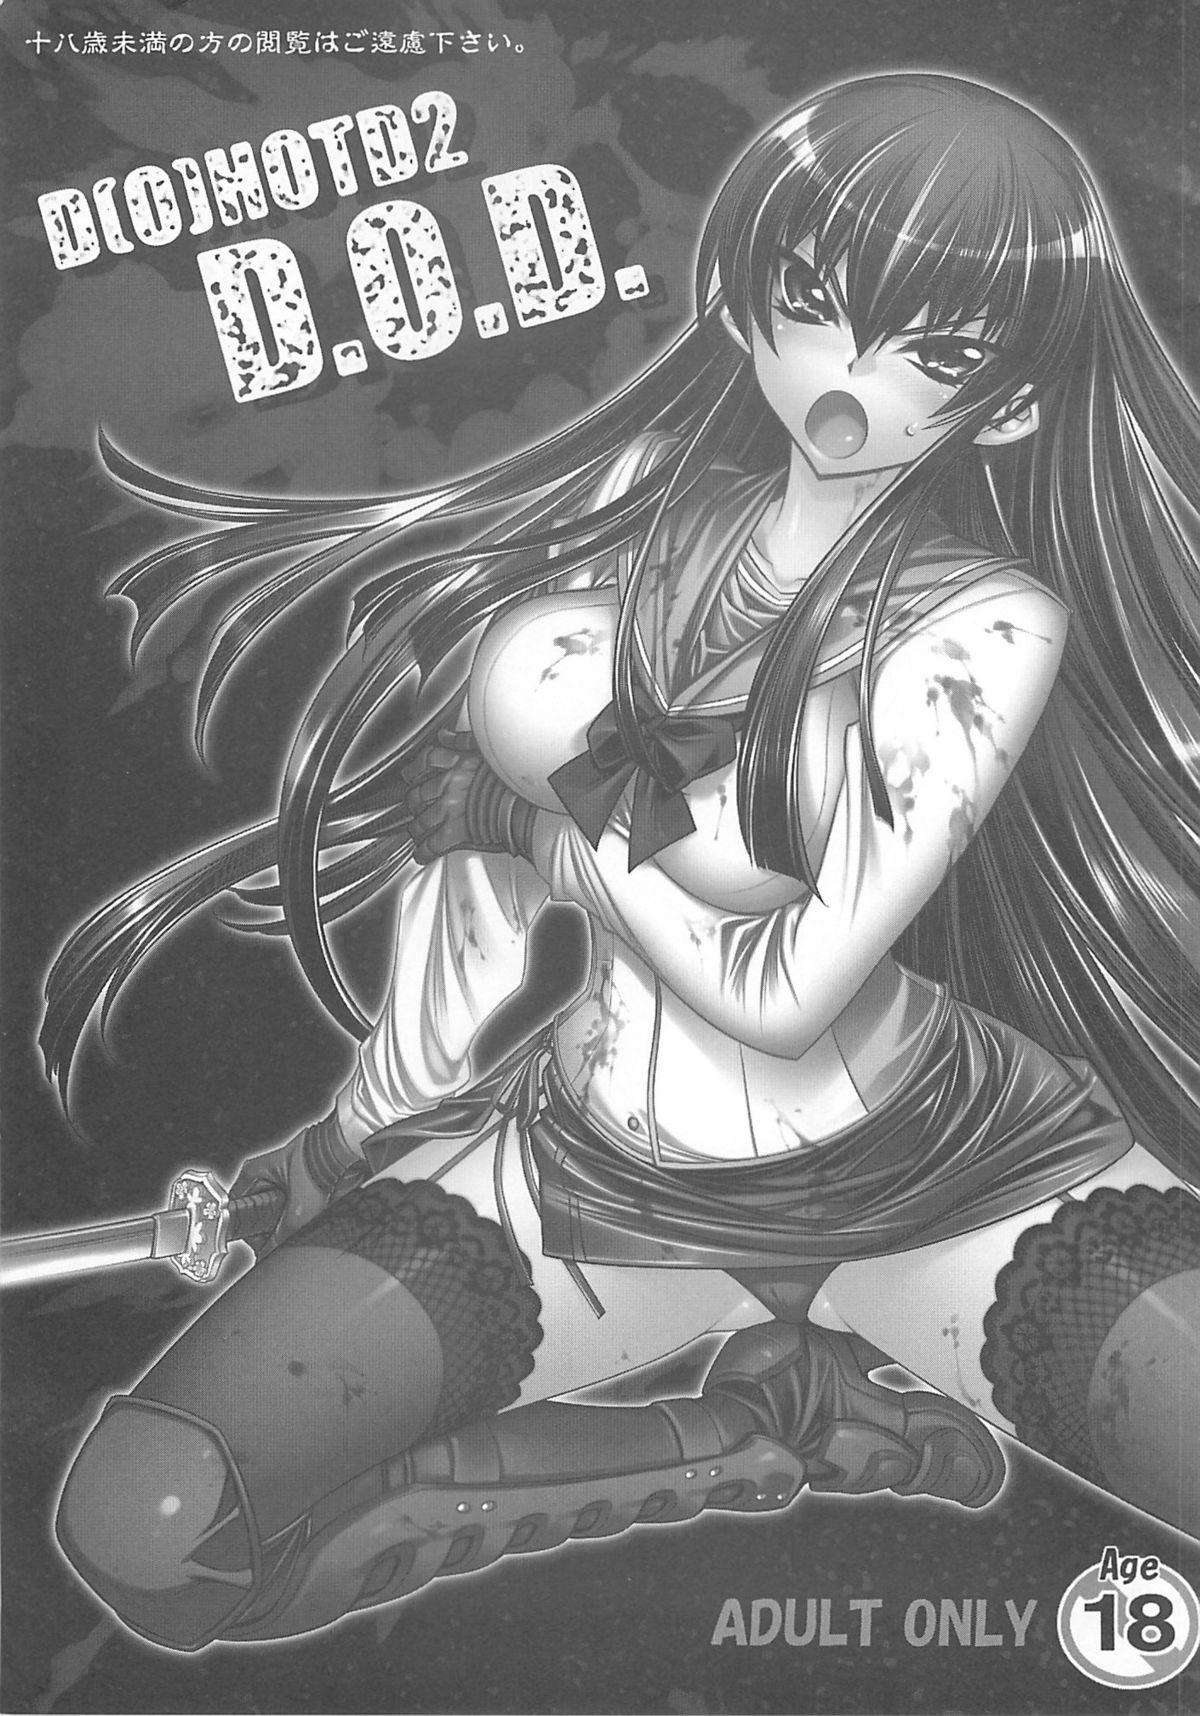 Bitch (C74) [Kashiwa-ya (Hiyo Hiyo)] D[O]HOTD2 D.O.D. (Gakuen Mokushiroku HIGHSCHOOL OF THE DEAD) - Highschool of the dead Masturbation - Page 3